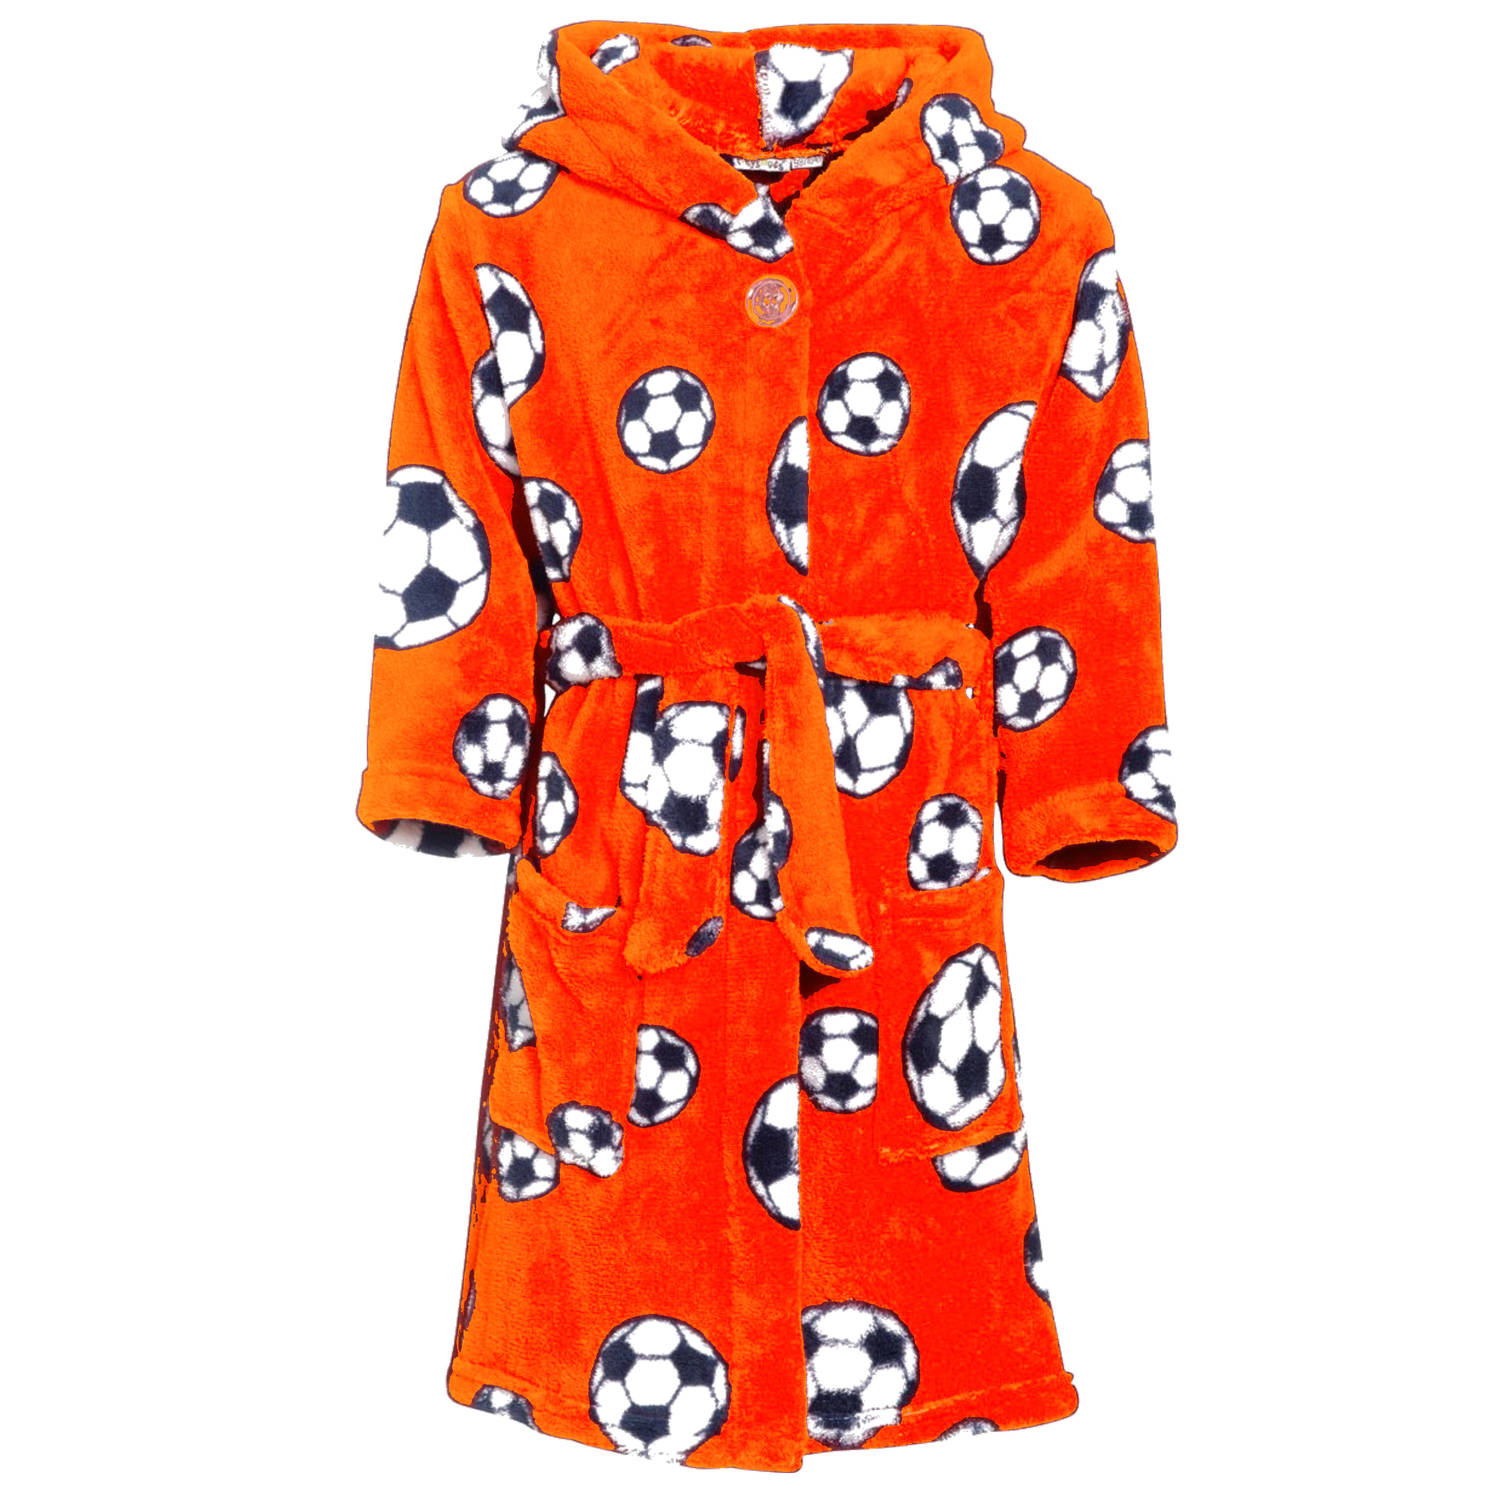 Badjas-ochtendjas oranje fleece voetbal print voor kinderen. 110-116 (5-6 jr) Badjassen